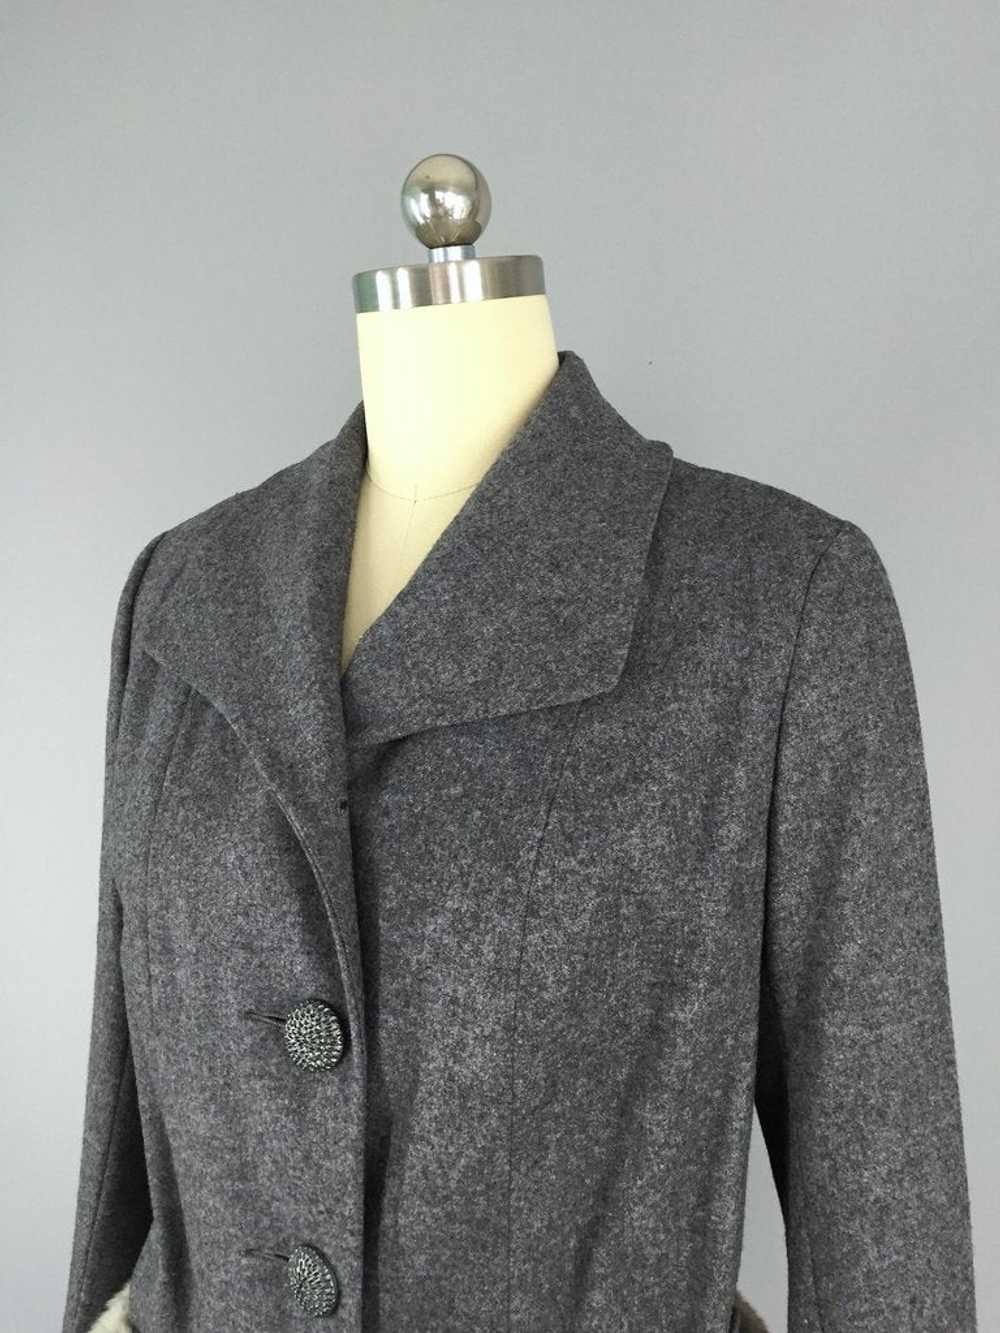 Vintage 1940s Grey Wool Jacket with Fur Trim - image 2